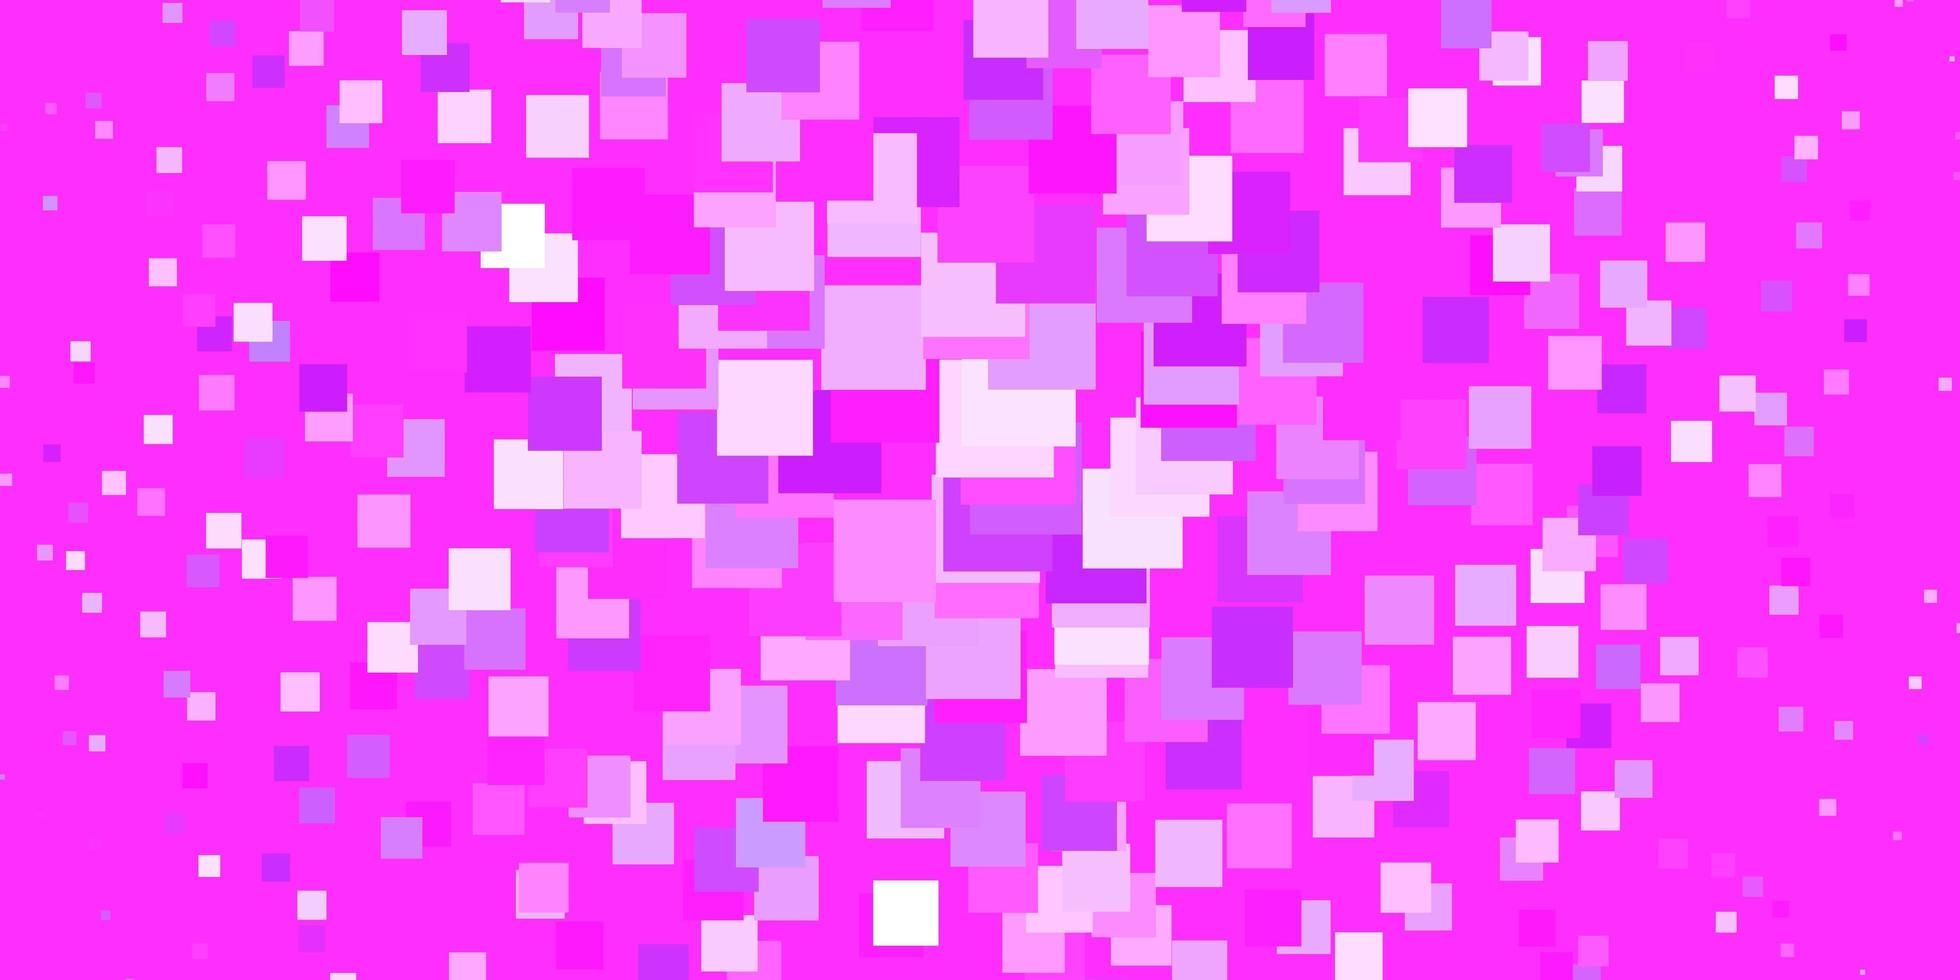 fond de vecteur violet clair, rose dans un style polygonal.